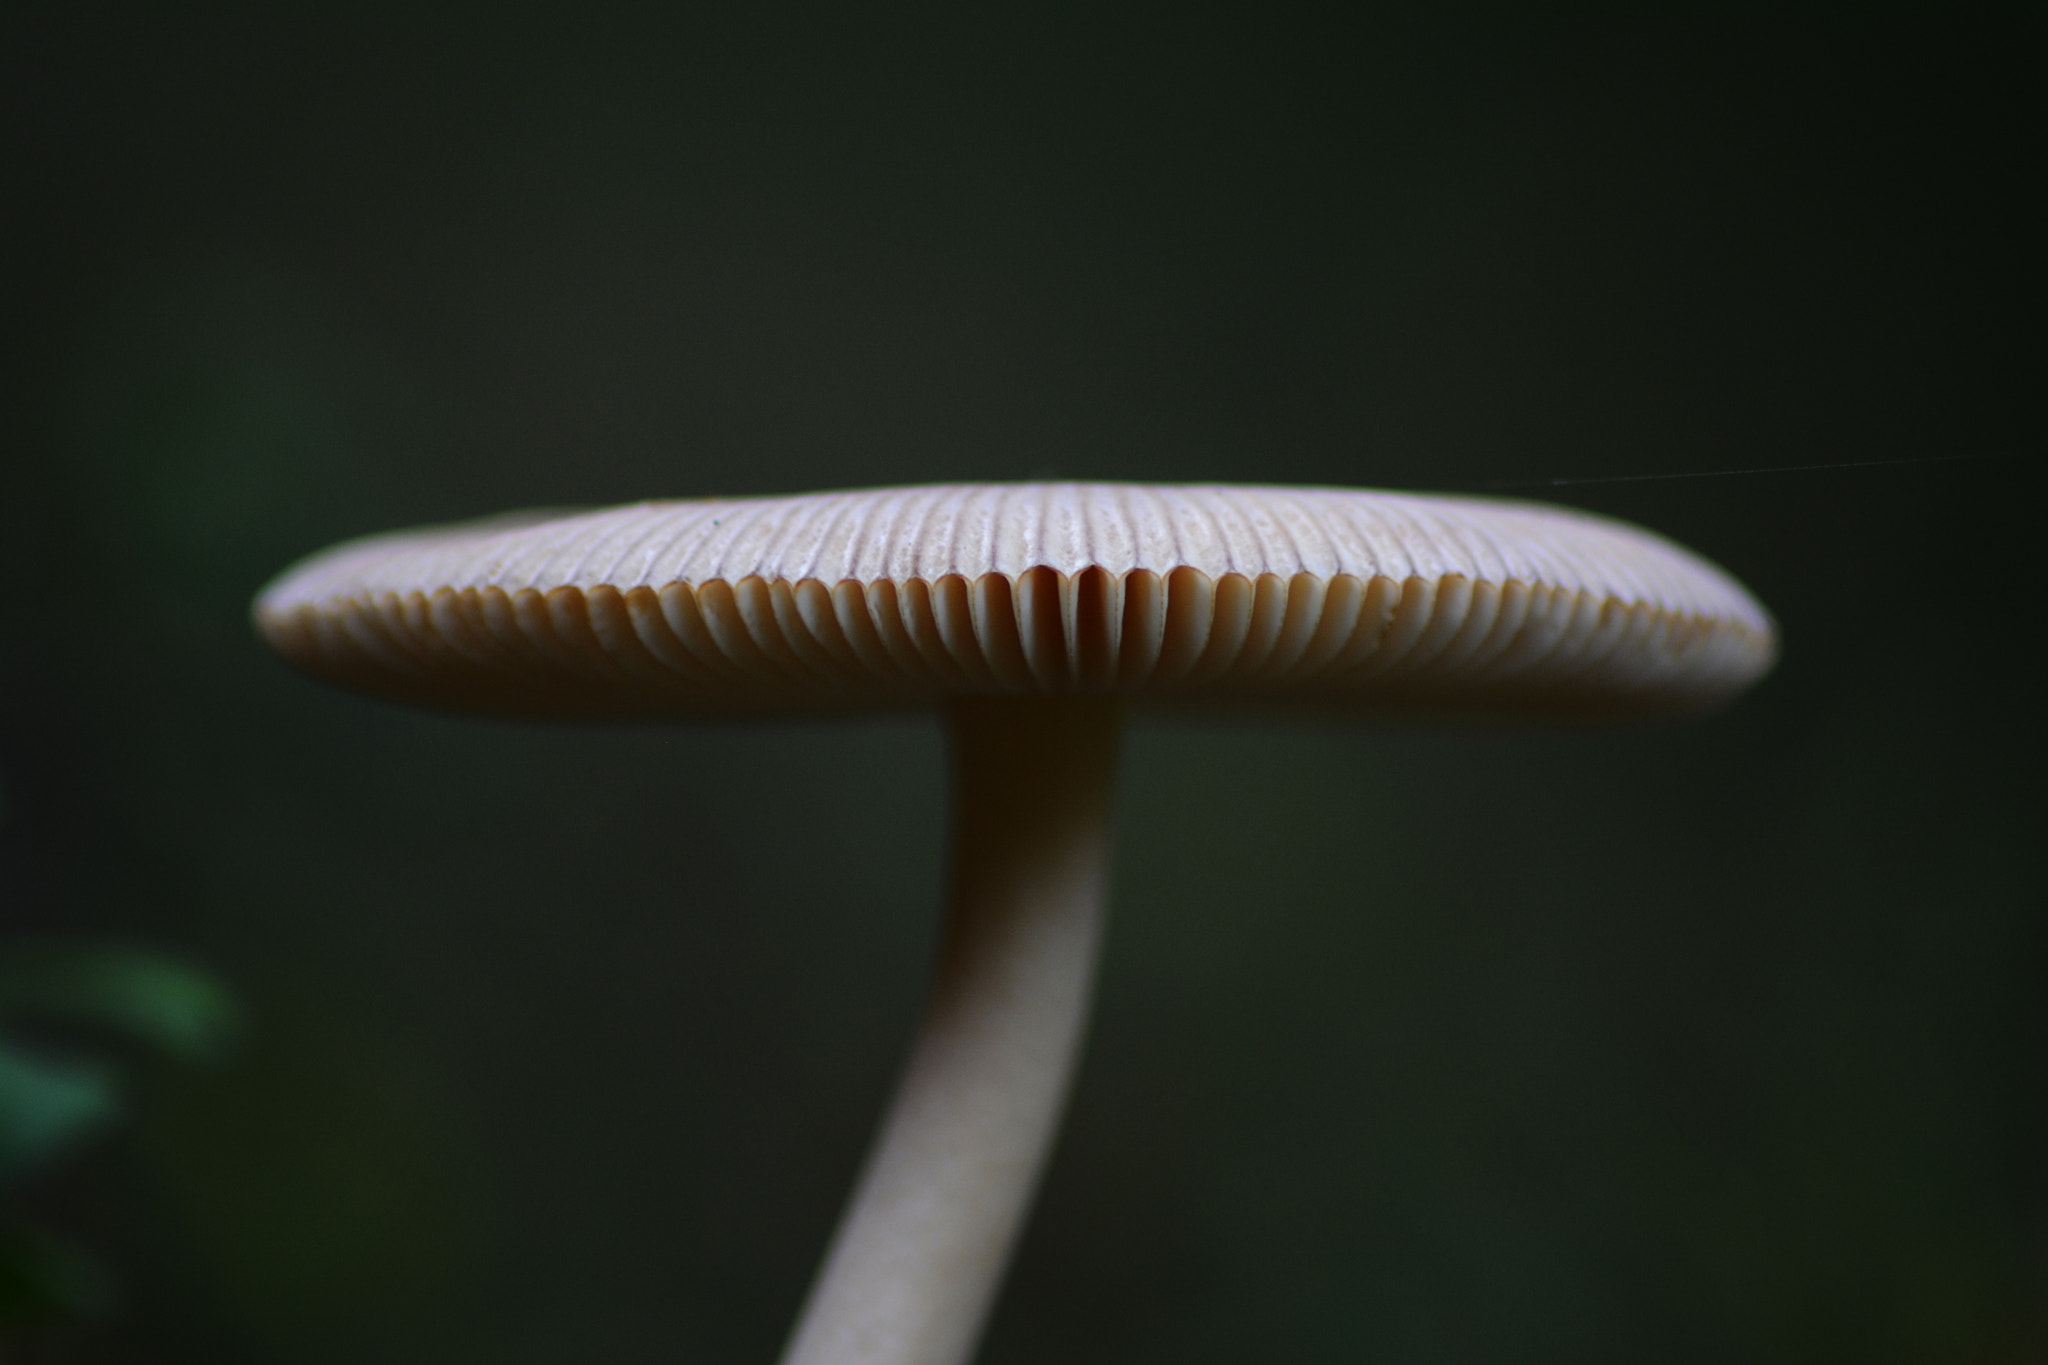 AF Nikkor 50mm f/1.8D + 1.4x sample photo. Mushroom | mapog photography